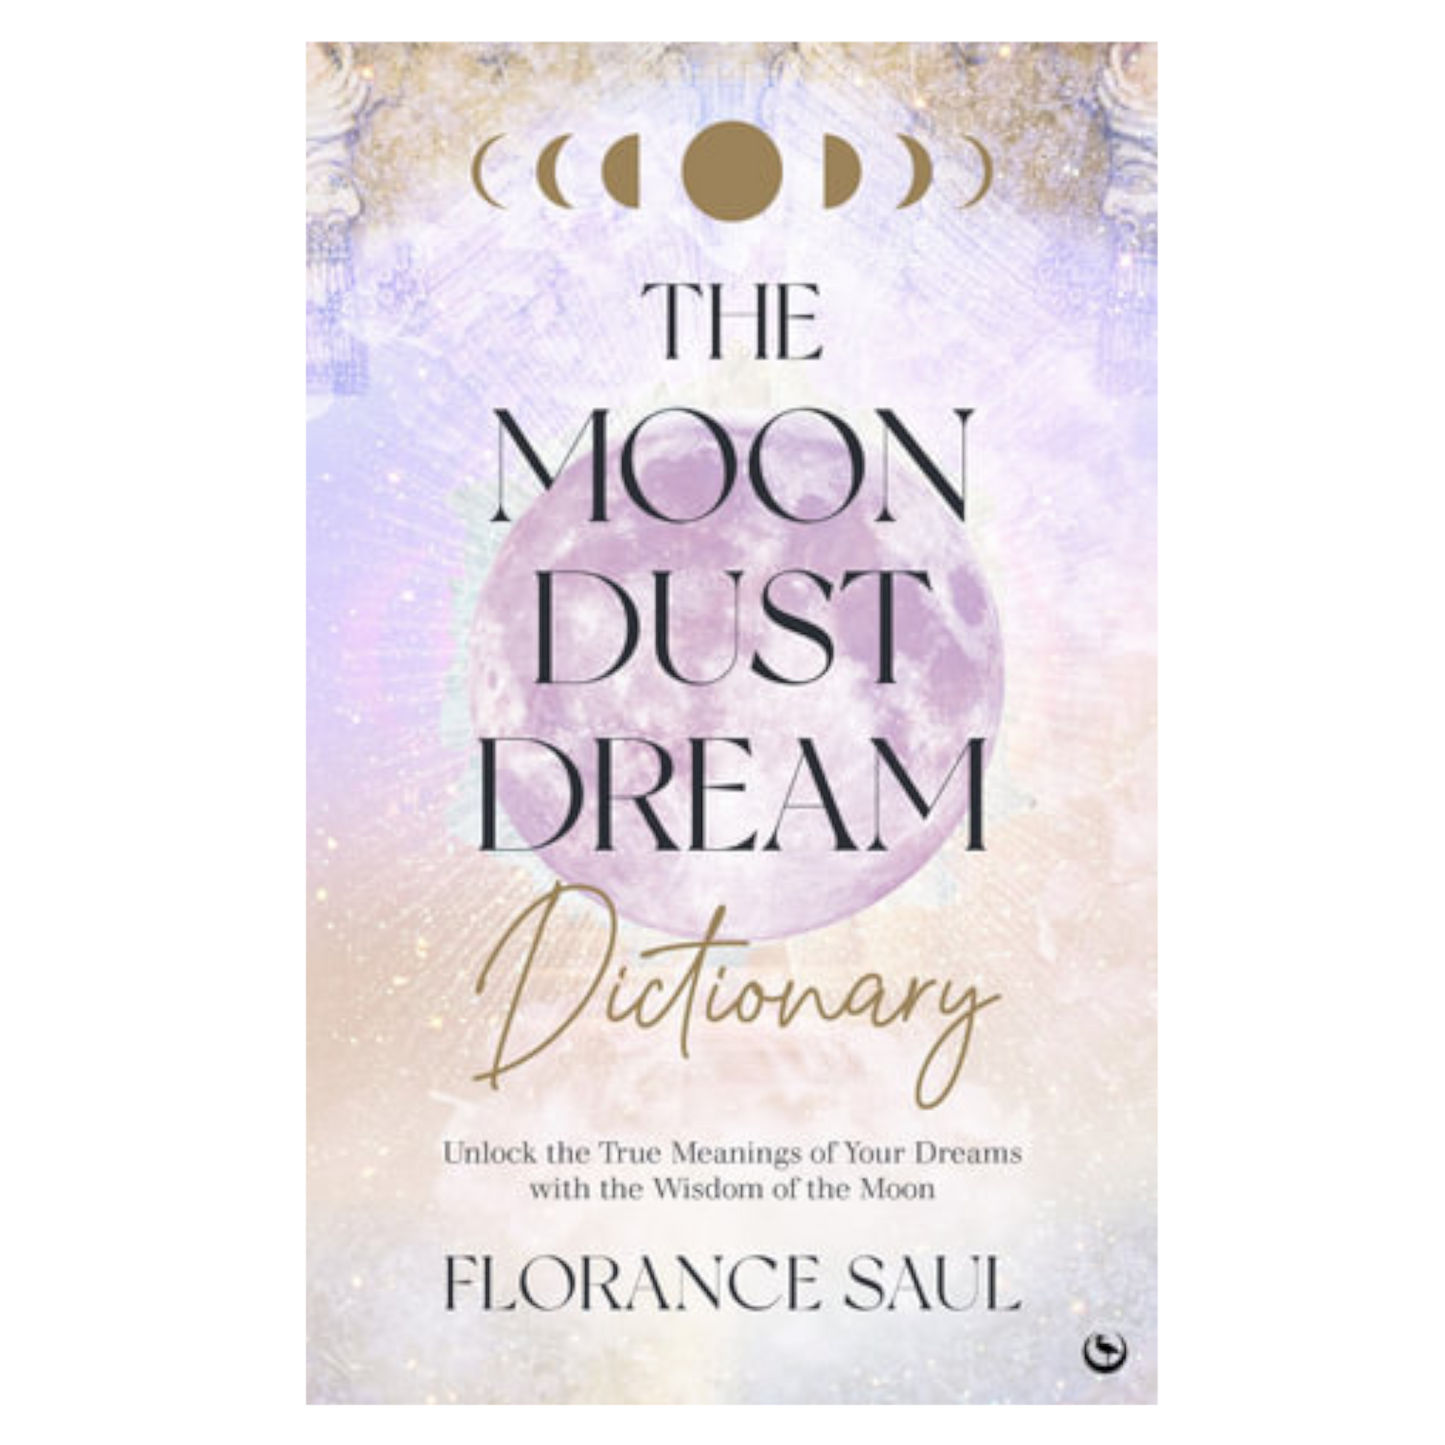 The Moon Dust Dream Dictionary by Florance Saul